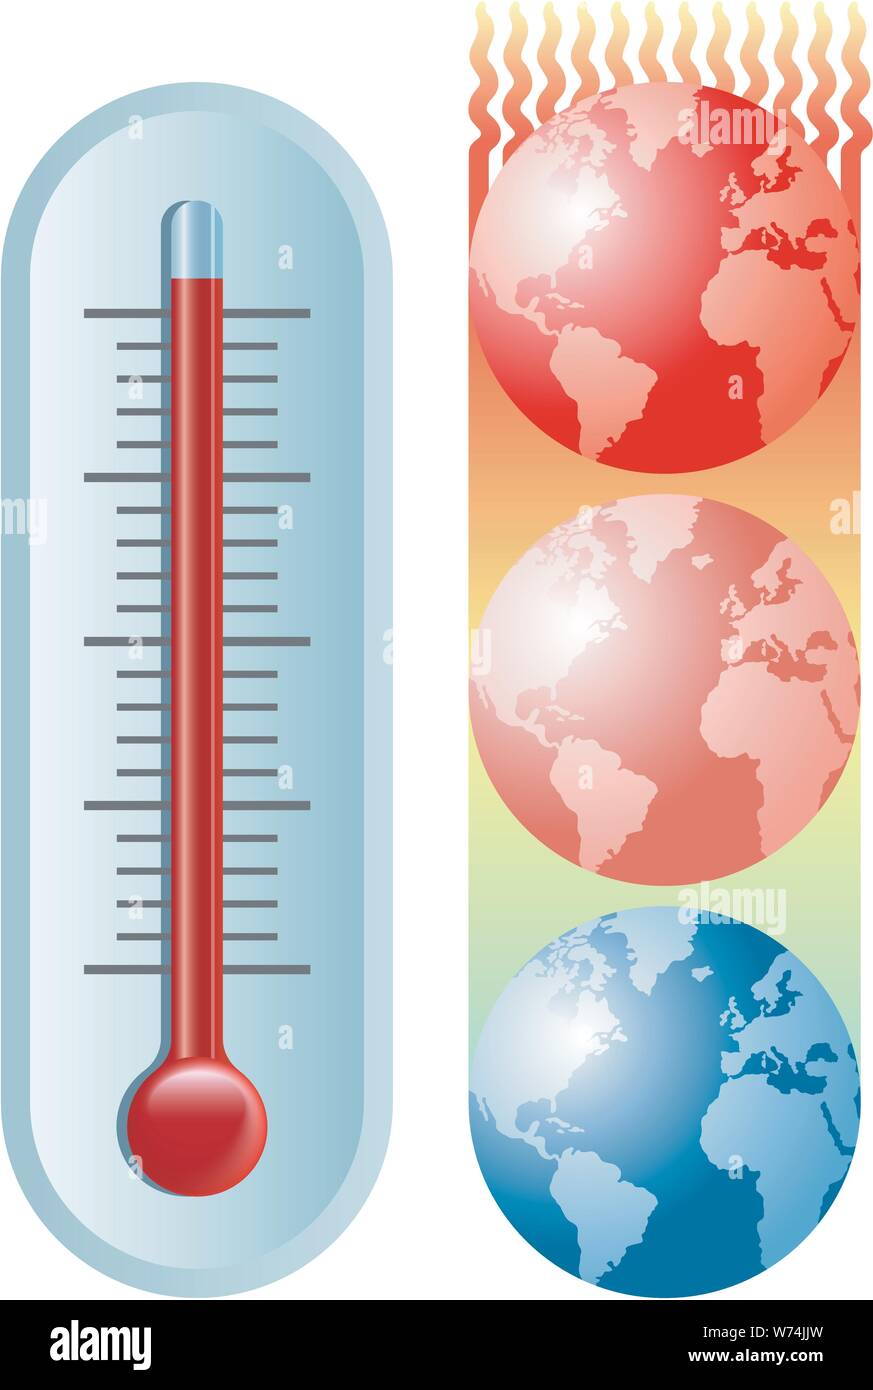 Eine Abbildung von einem Thermometer und der Planet Erde in Richtung heißer und heißer Temperaturen. Stock Vektor